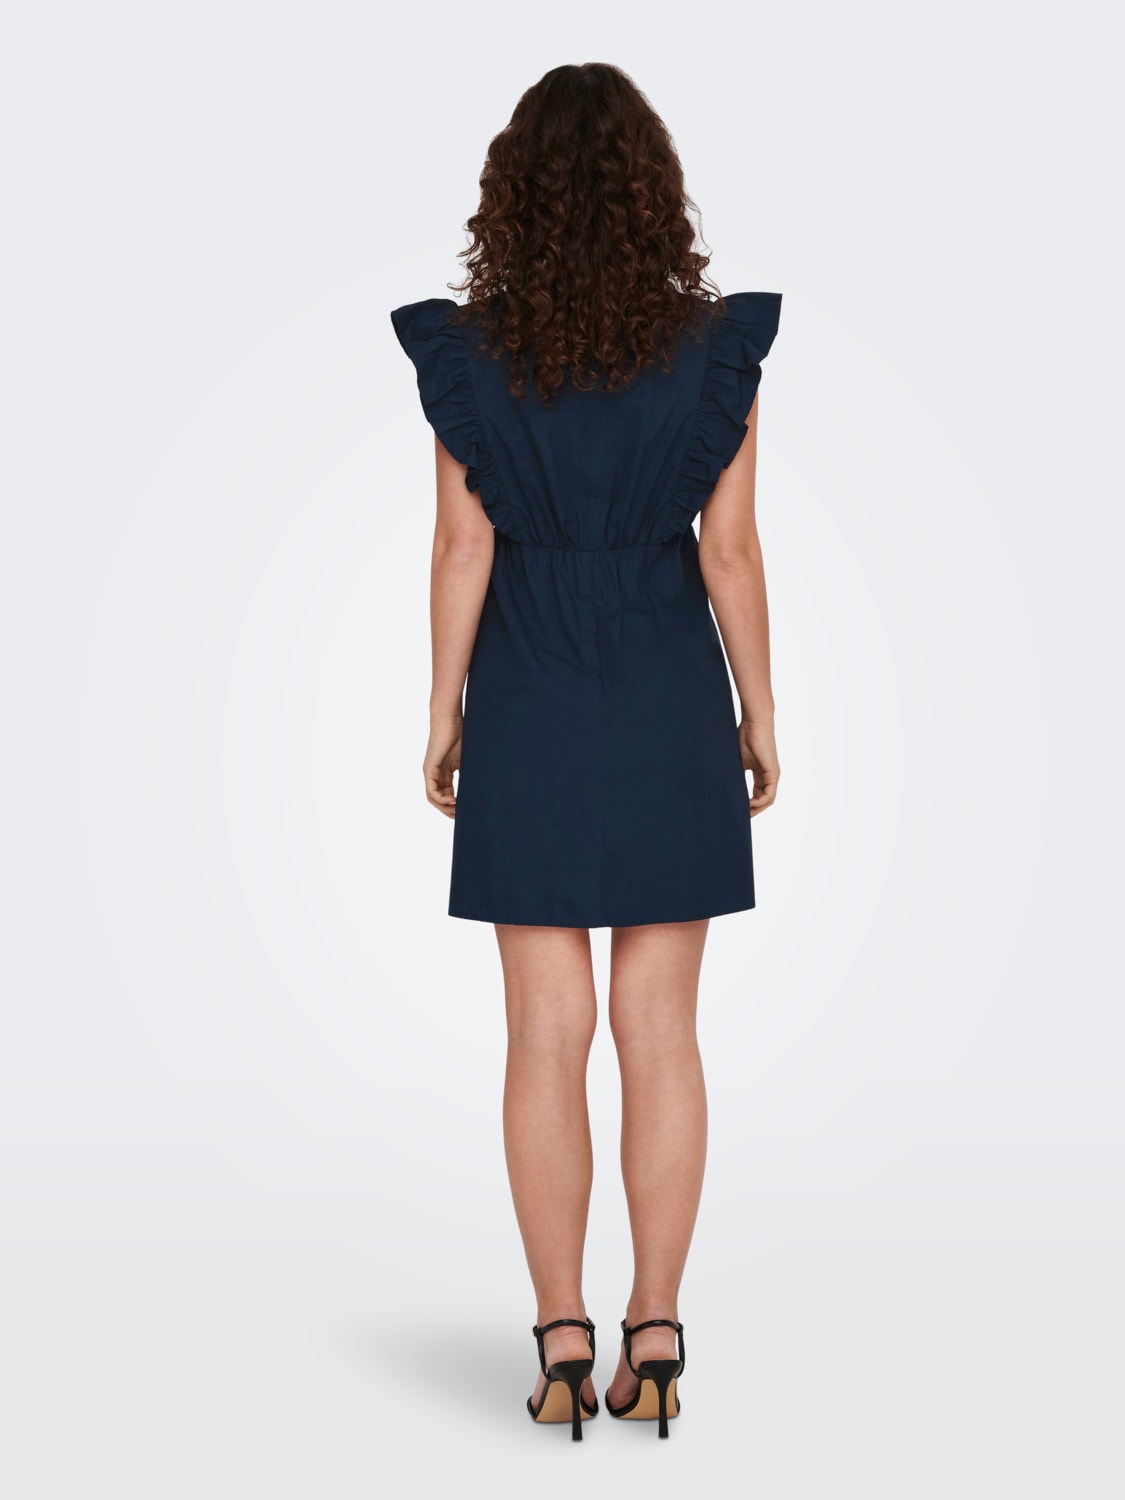 ONLY® auf geschnitten Rabatt Kurzes | 20% Kleid V-Ausschnitt Normal